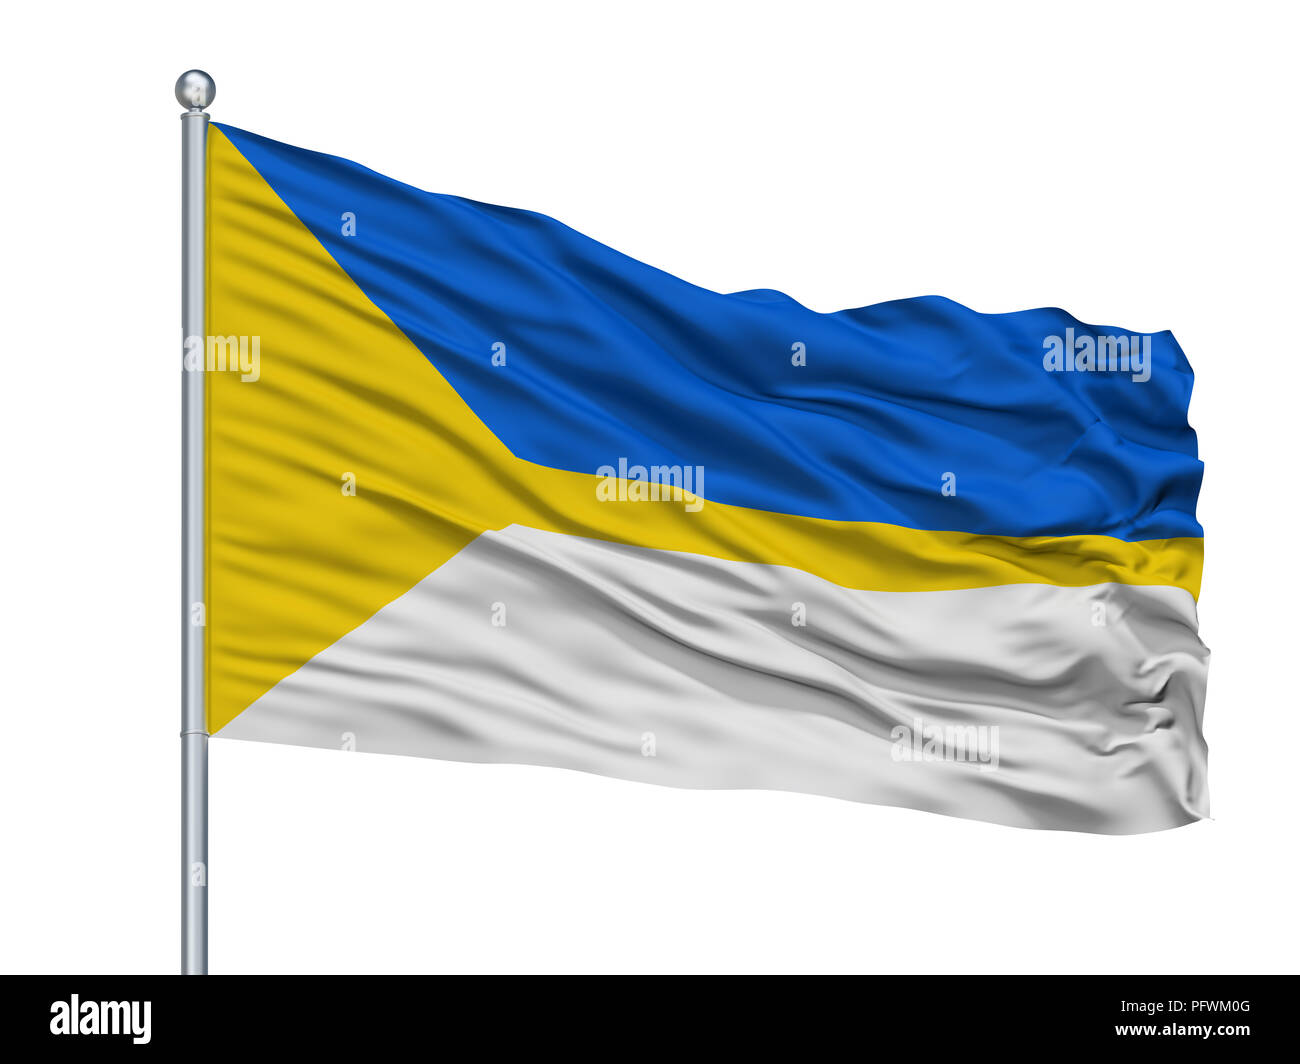 Maloyaroslavets City Flag On Flagpole, Russia, Kaluga Oblast, Isolated On White Background Stock Photo